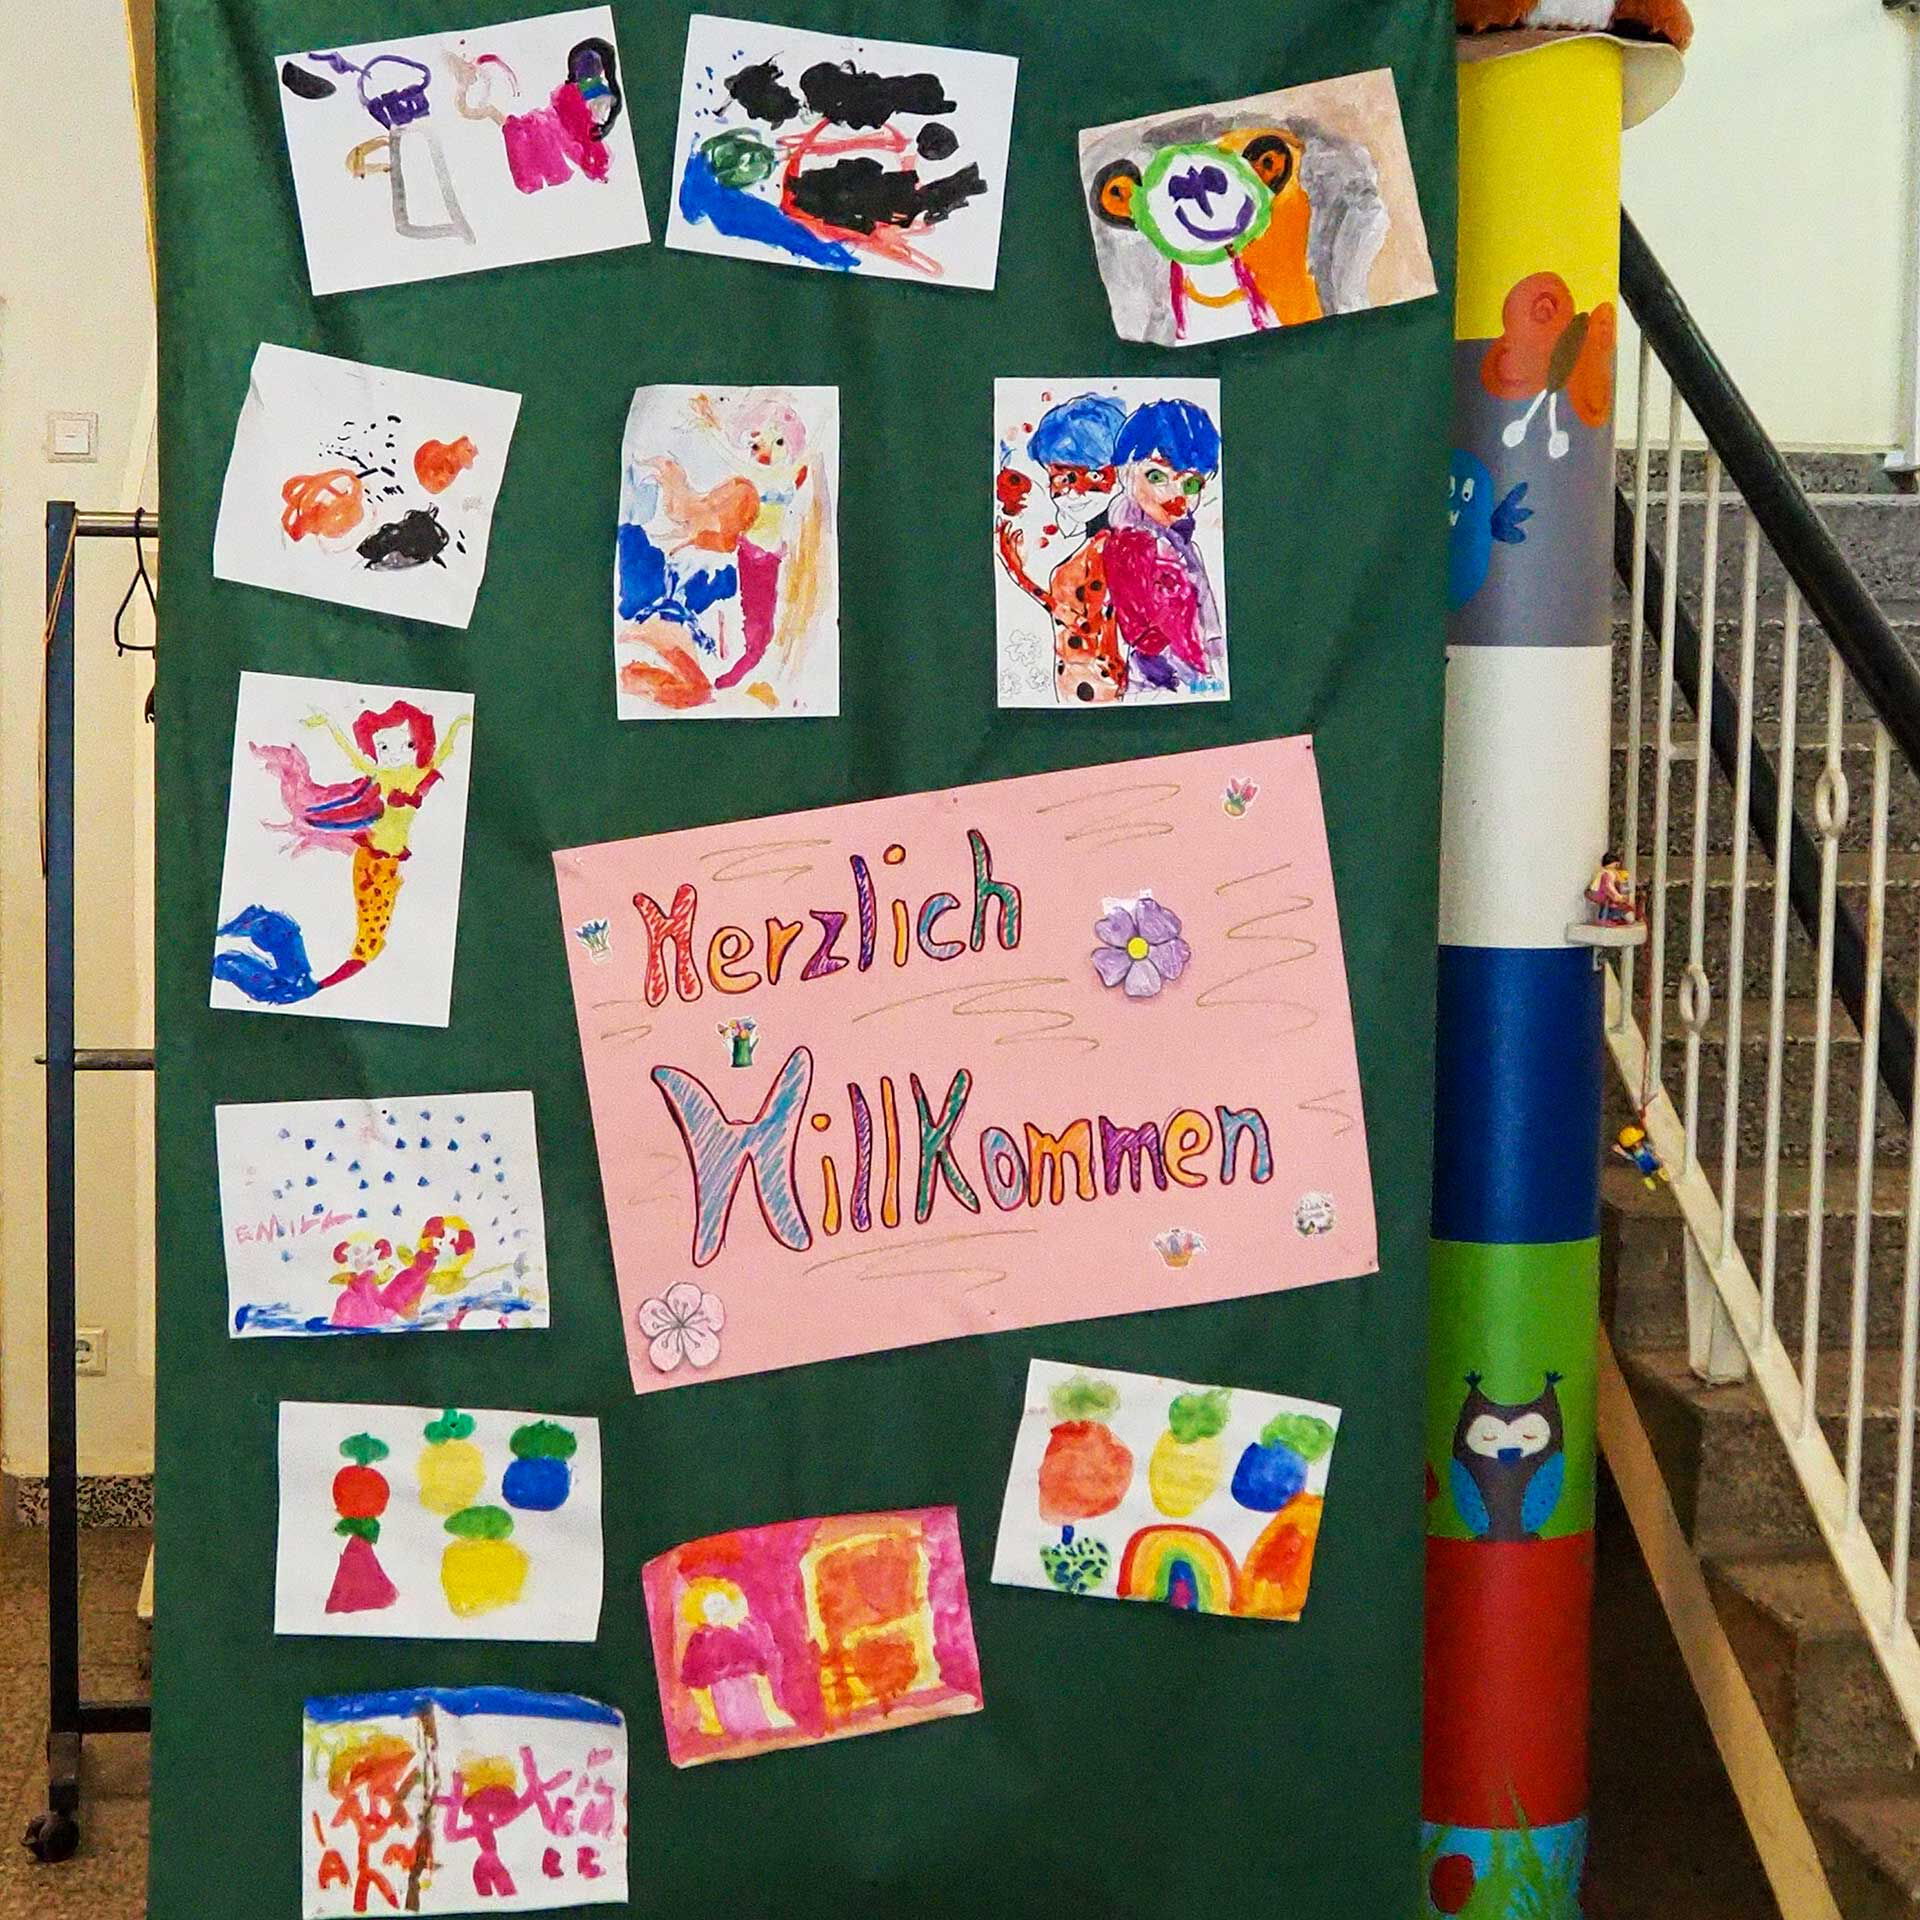 Kinder haben am Haupteingang mehrere Bilder selbst gemalt, auf ein großes grünes Plakat geklebt und in der Mitte steht die Aufschrift Herzlich Willkommen.